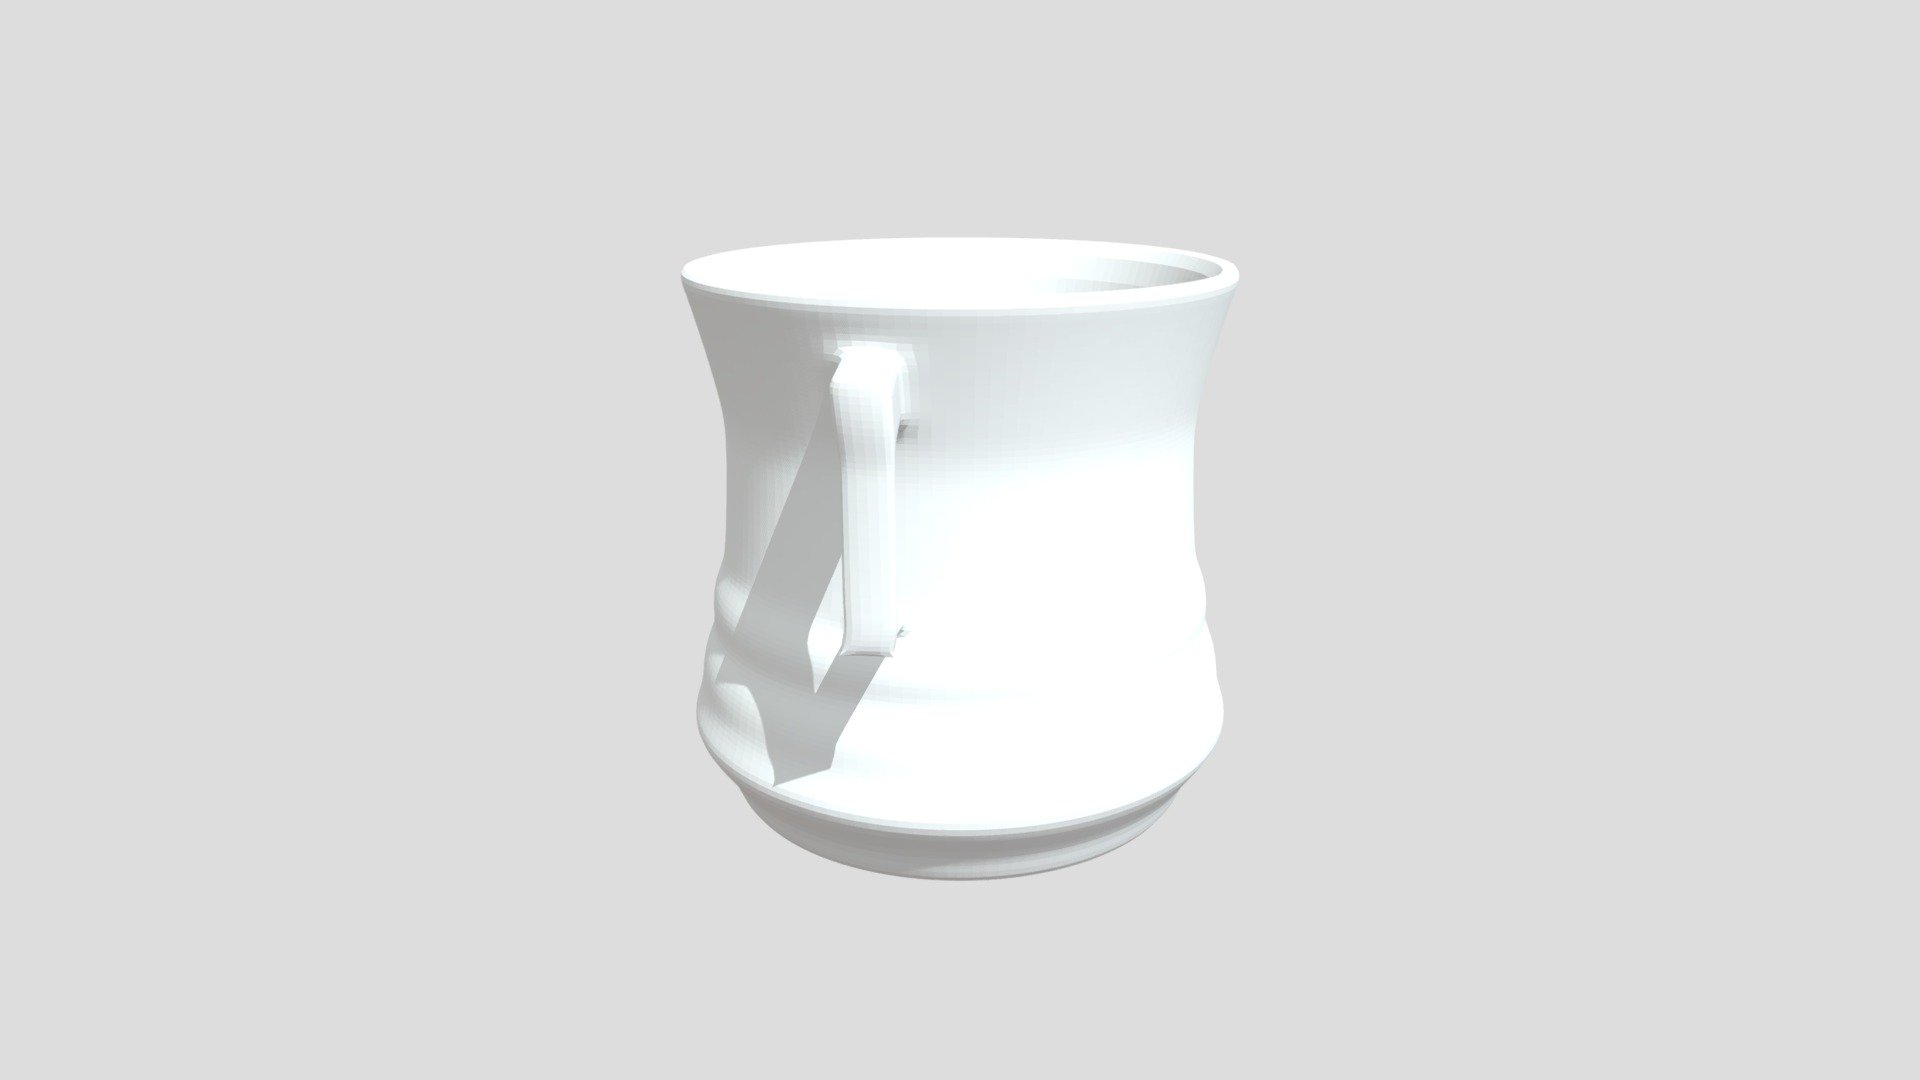 Cup Model - Blender